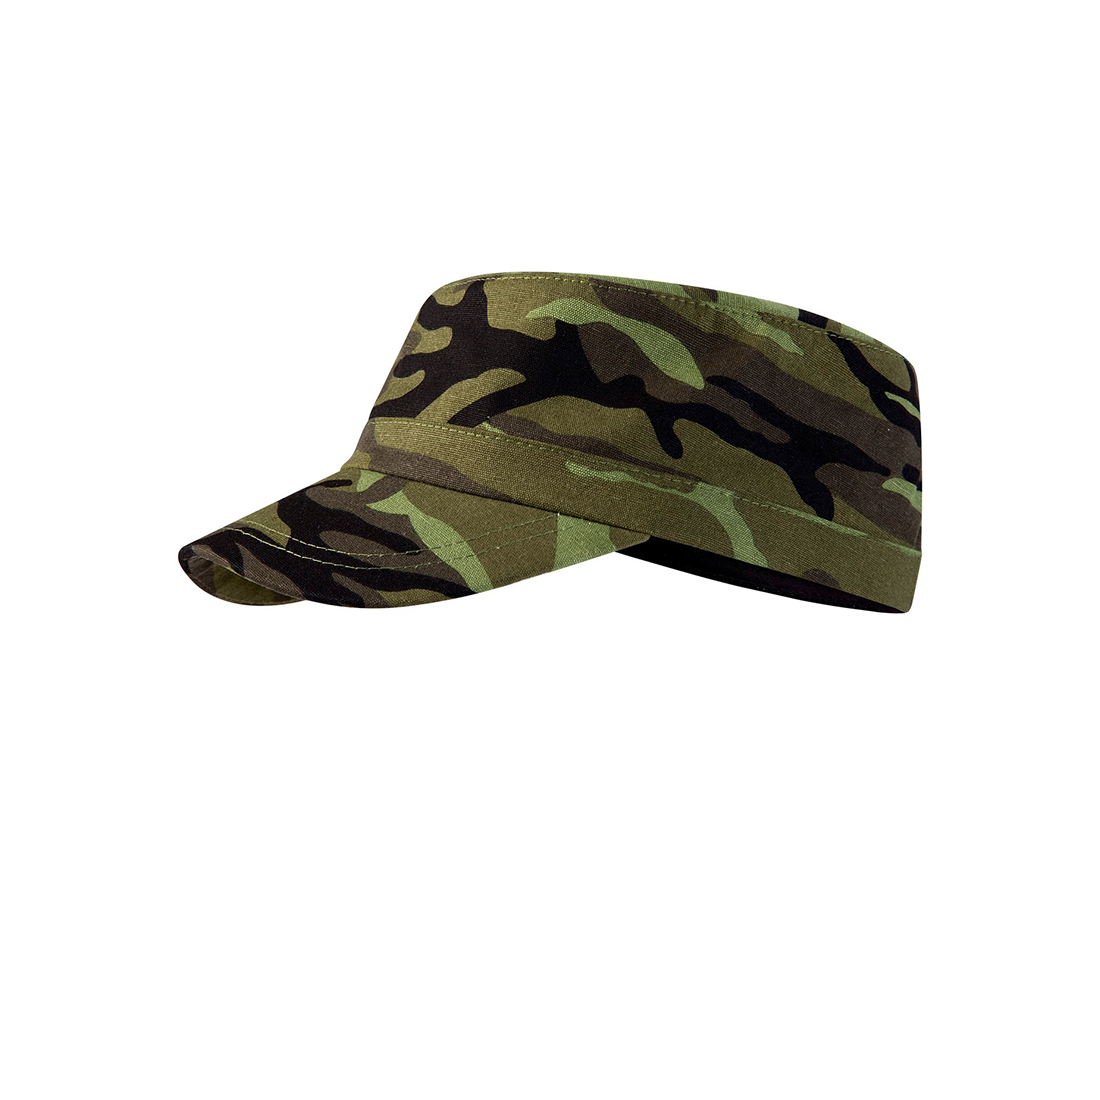 Casquette unisexe camouflage - Les vêtements de protection